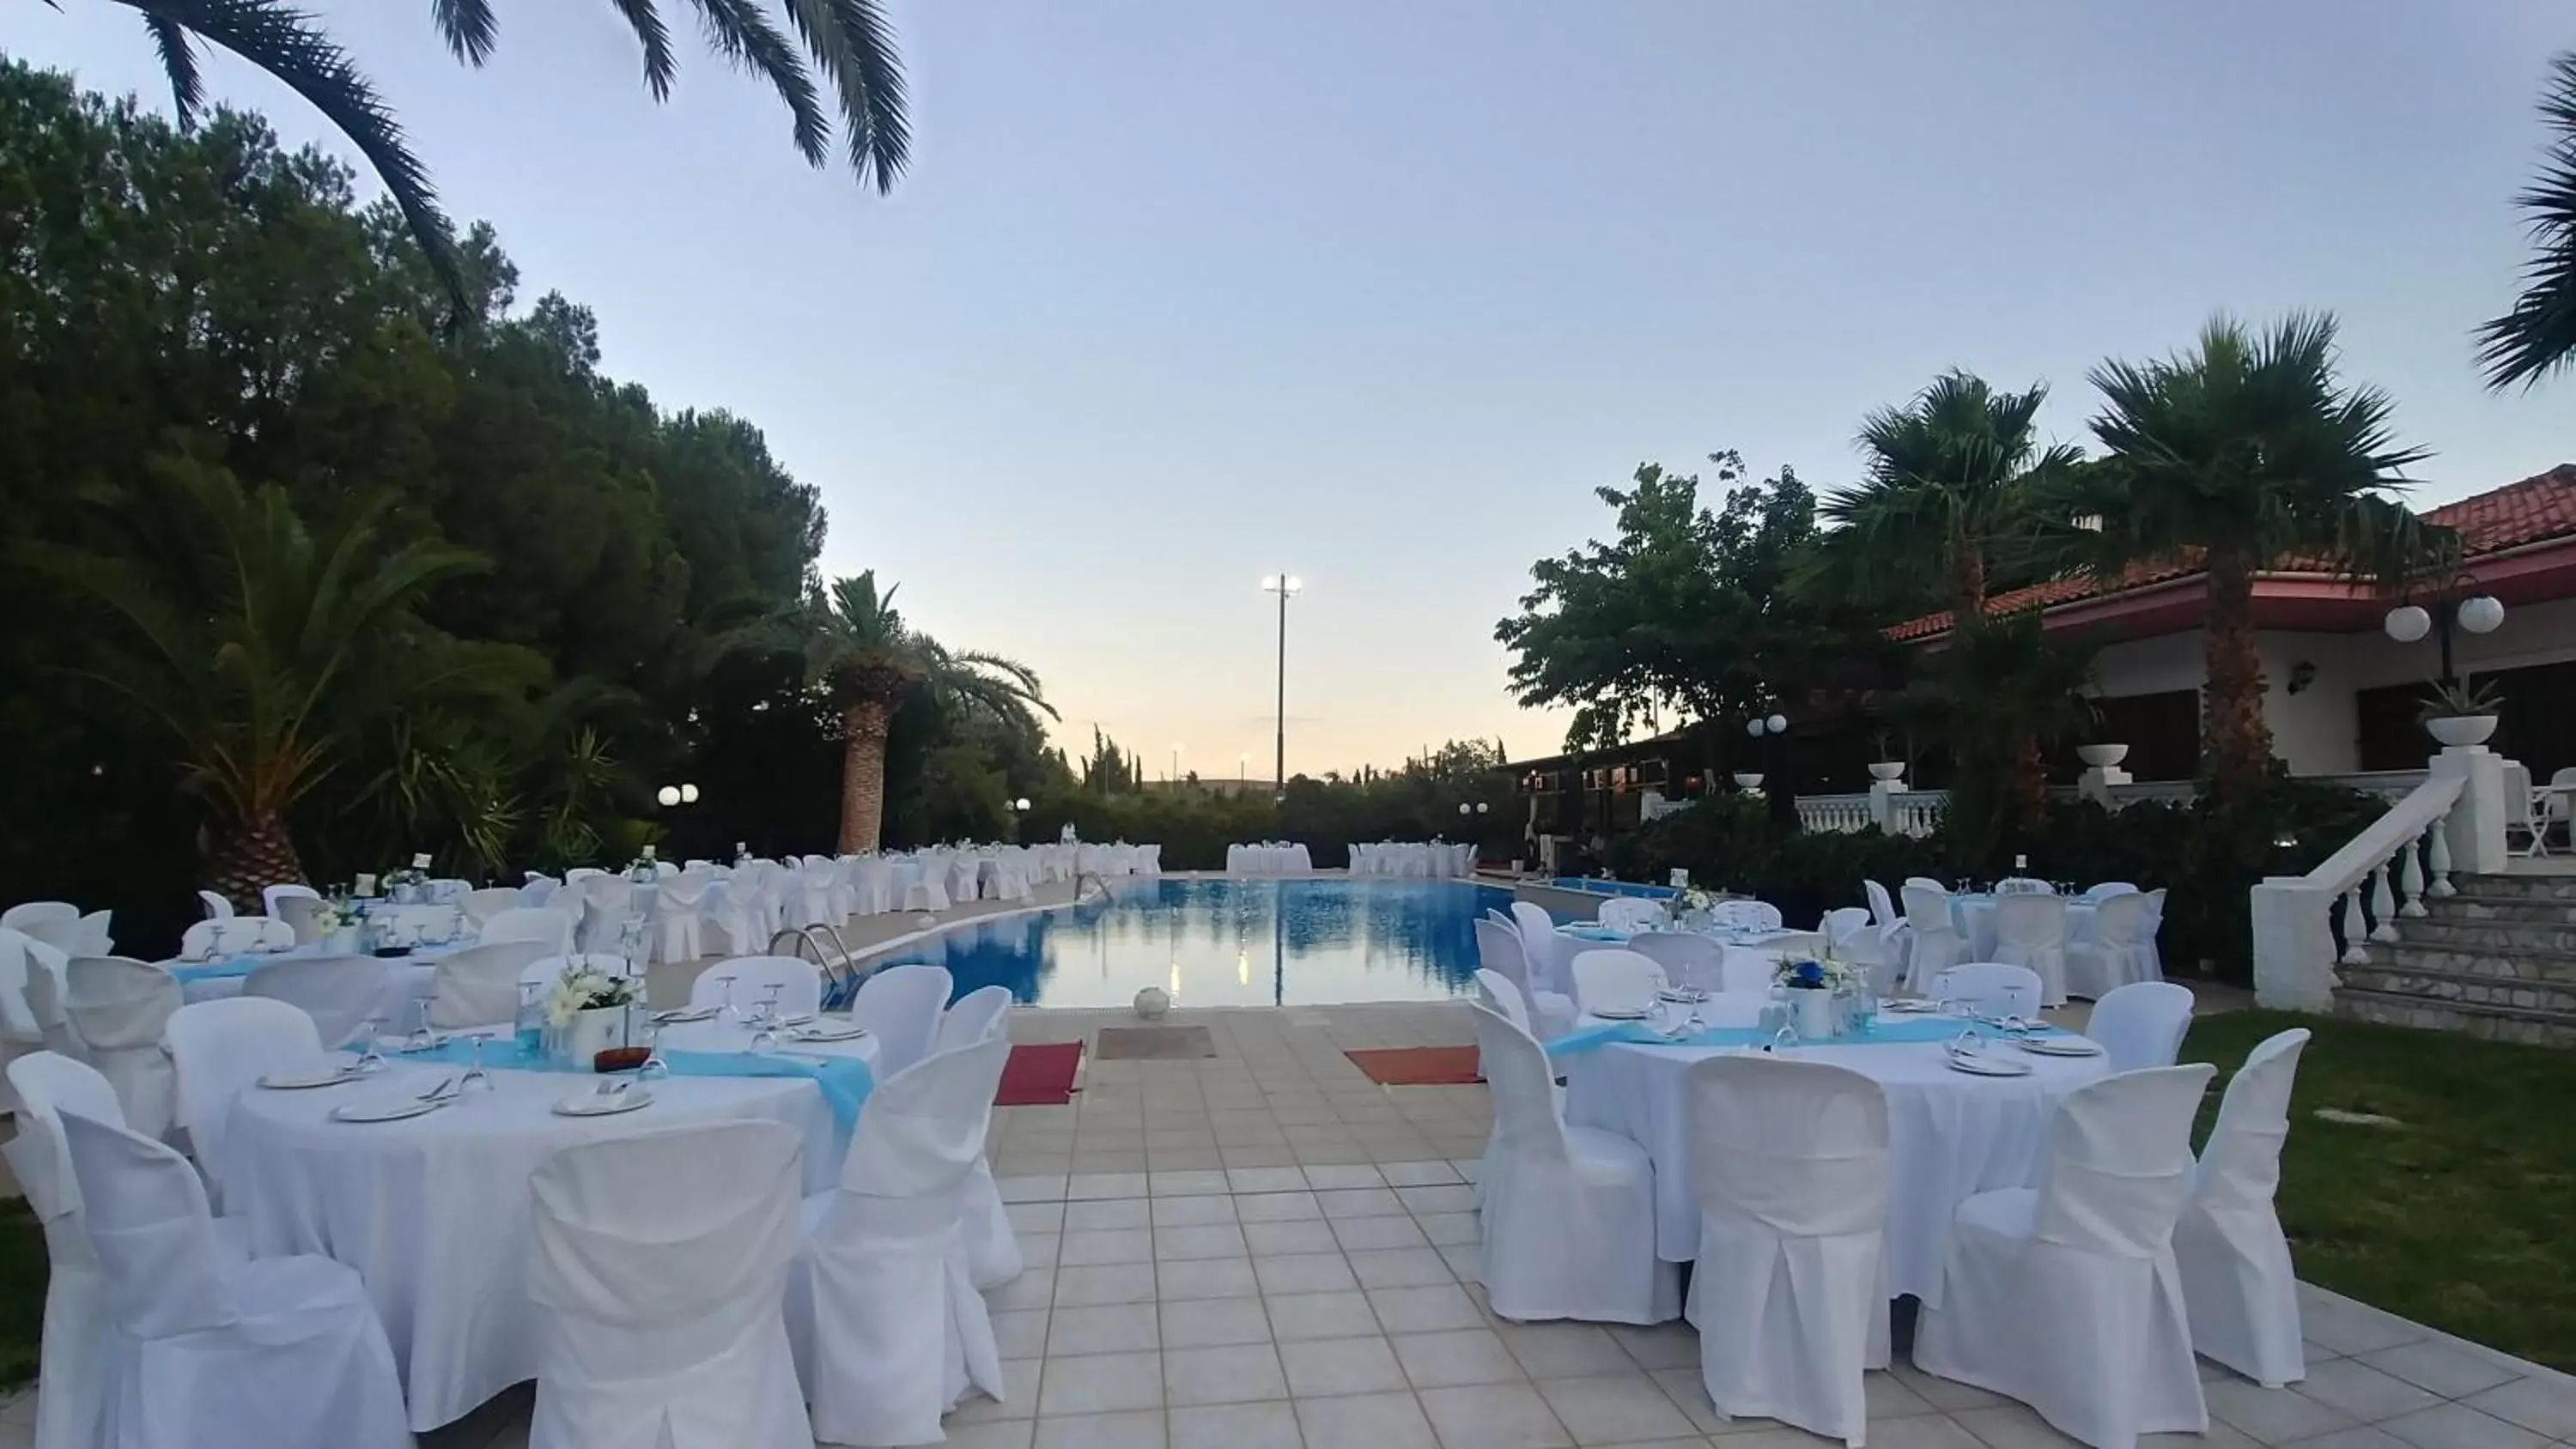 Banquet/Function facilities, Banquet Facilities in Villa Olympia